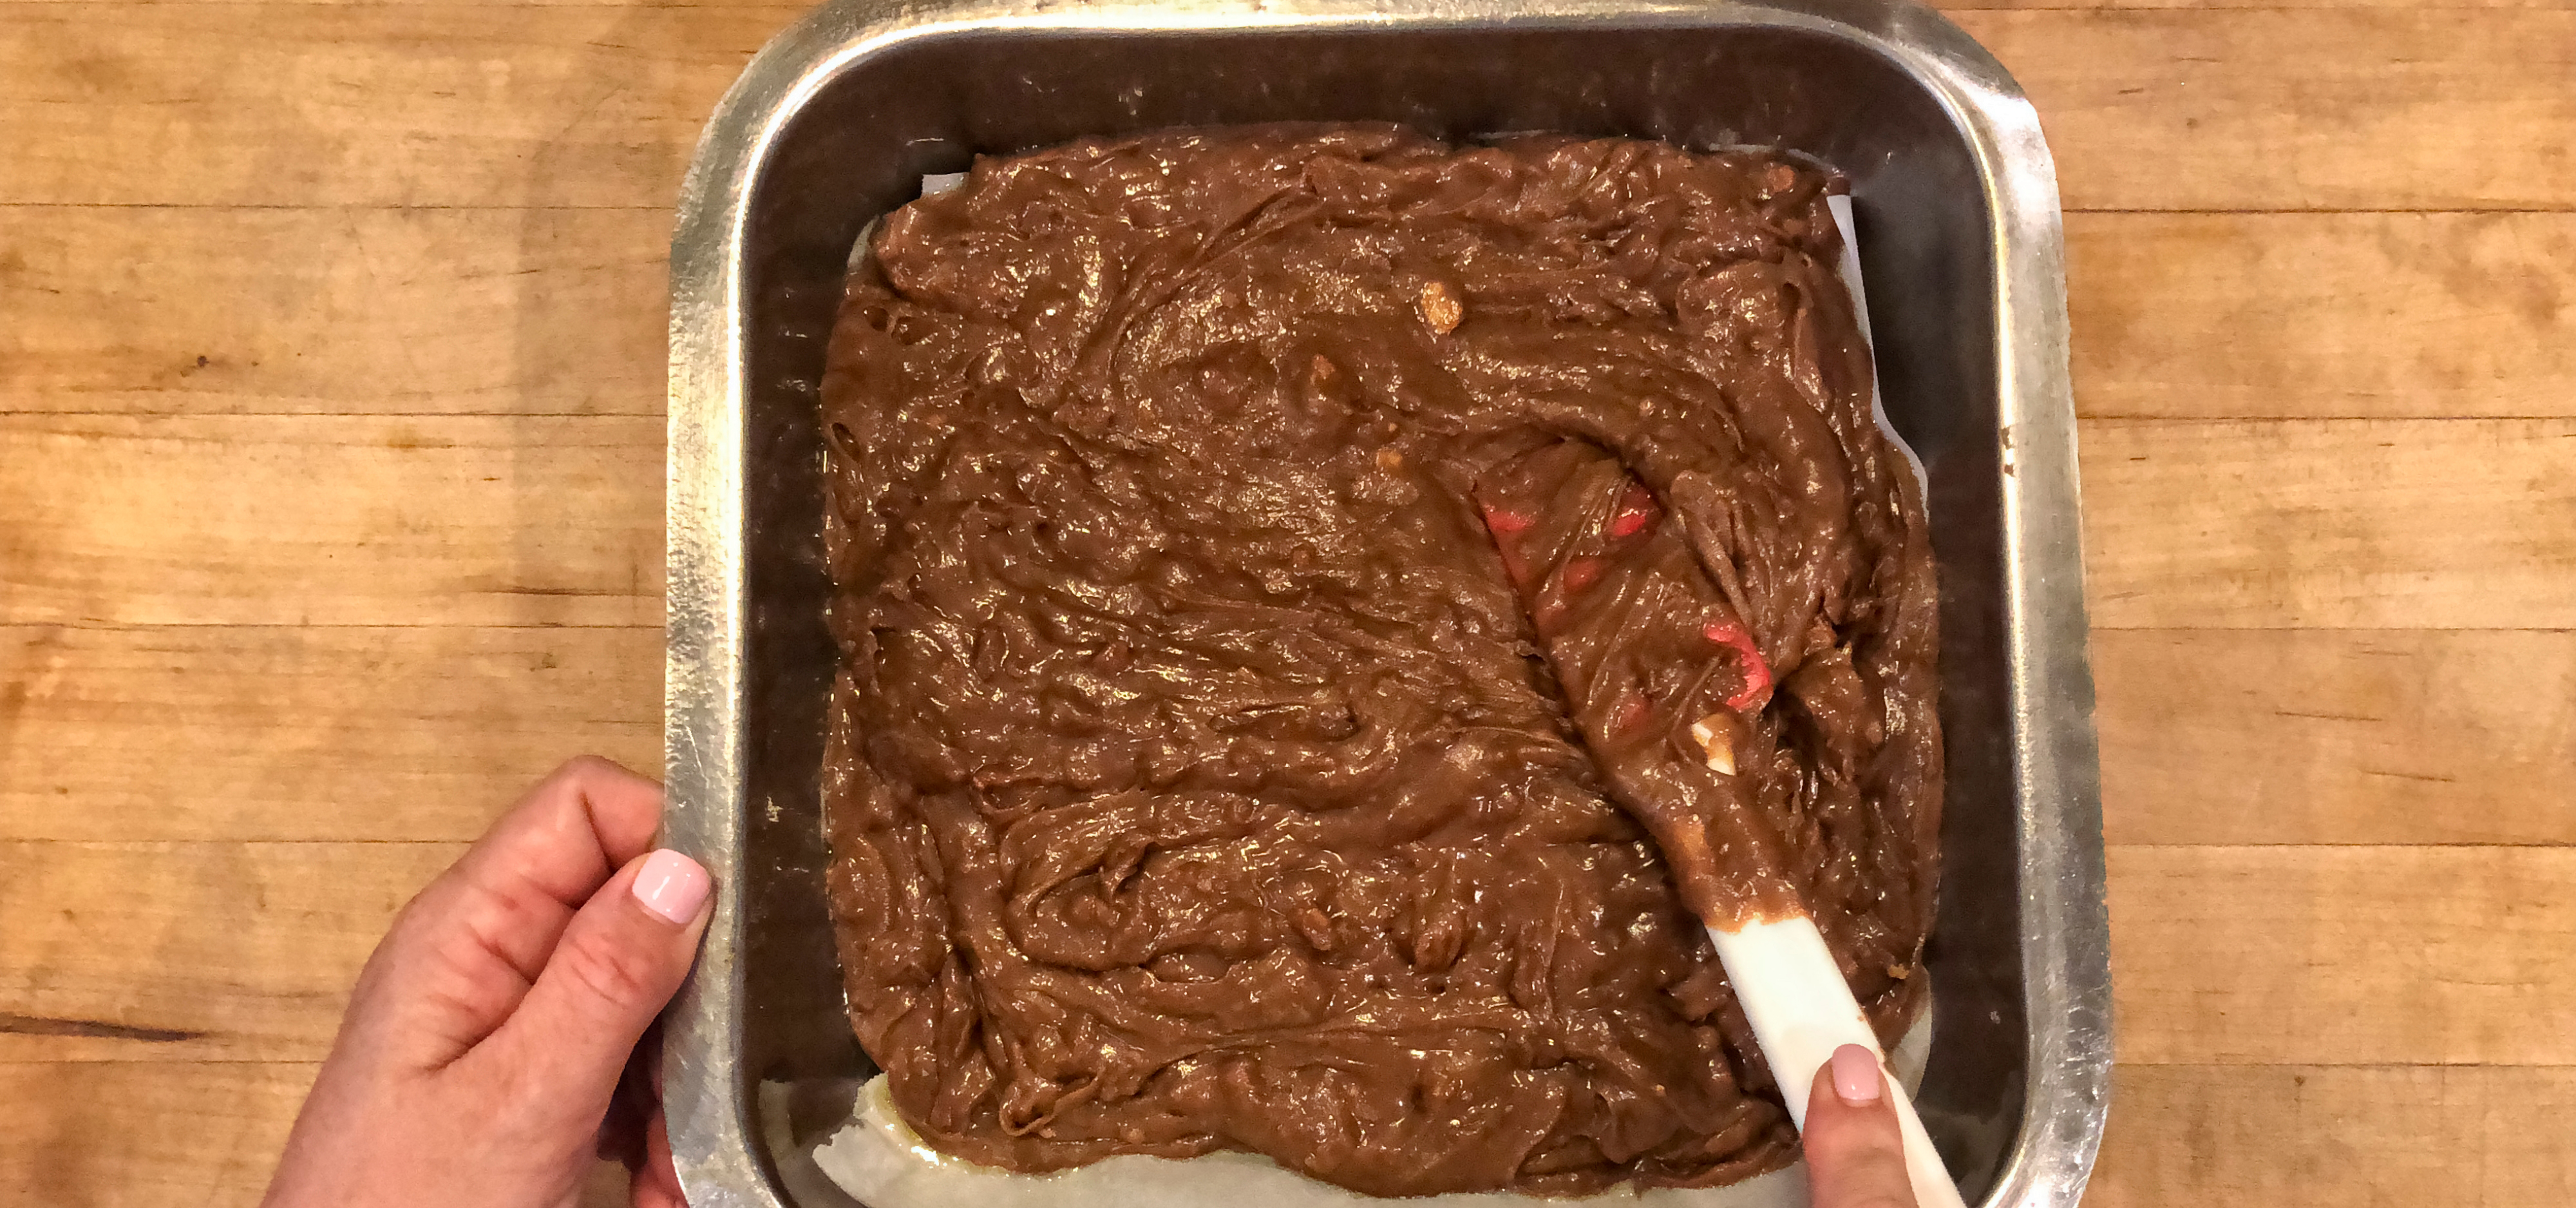 bake-the-brownies